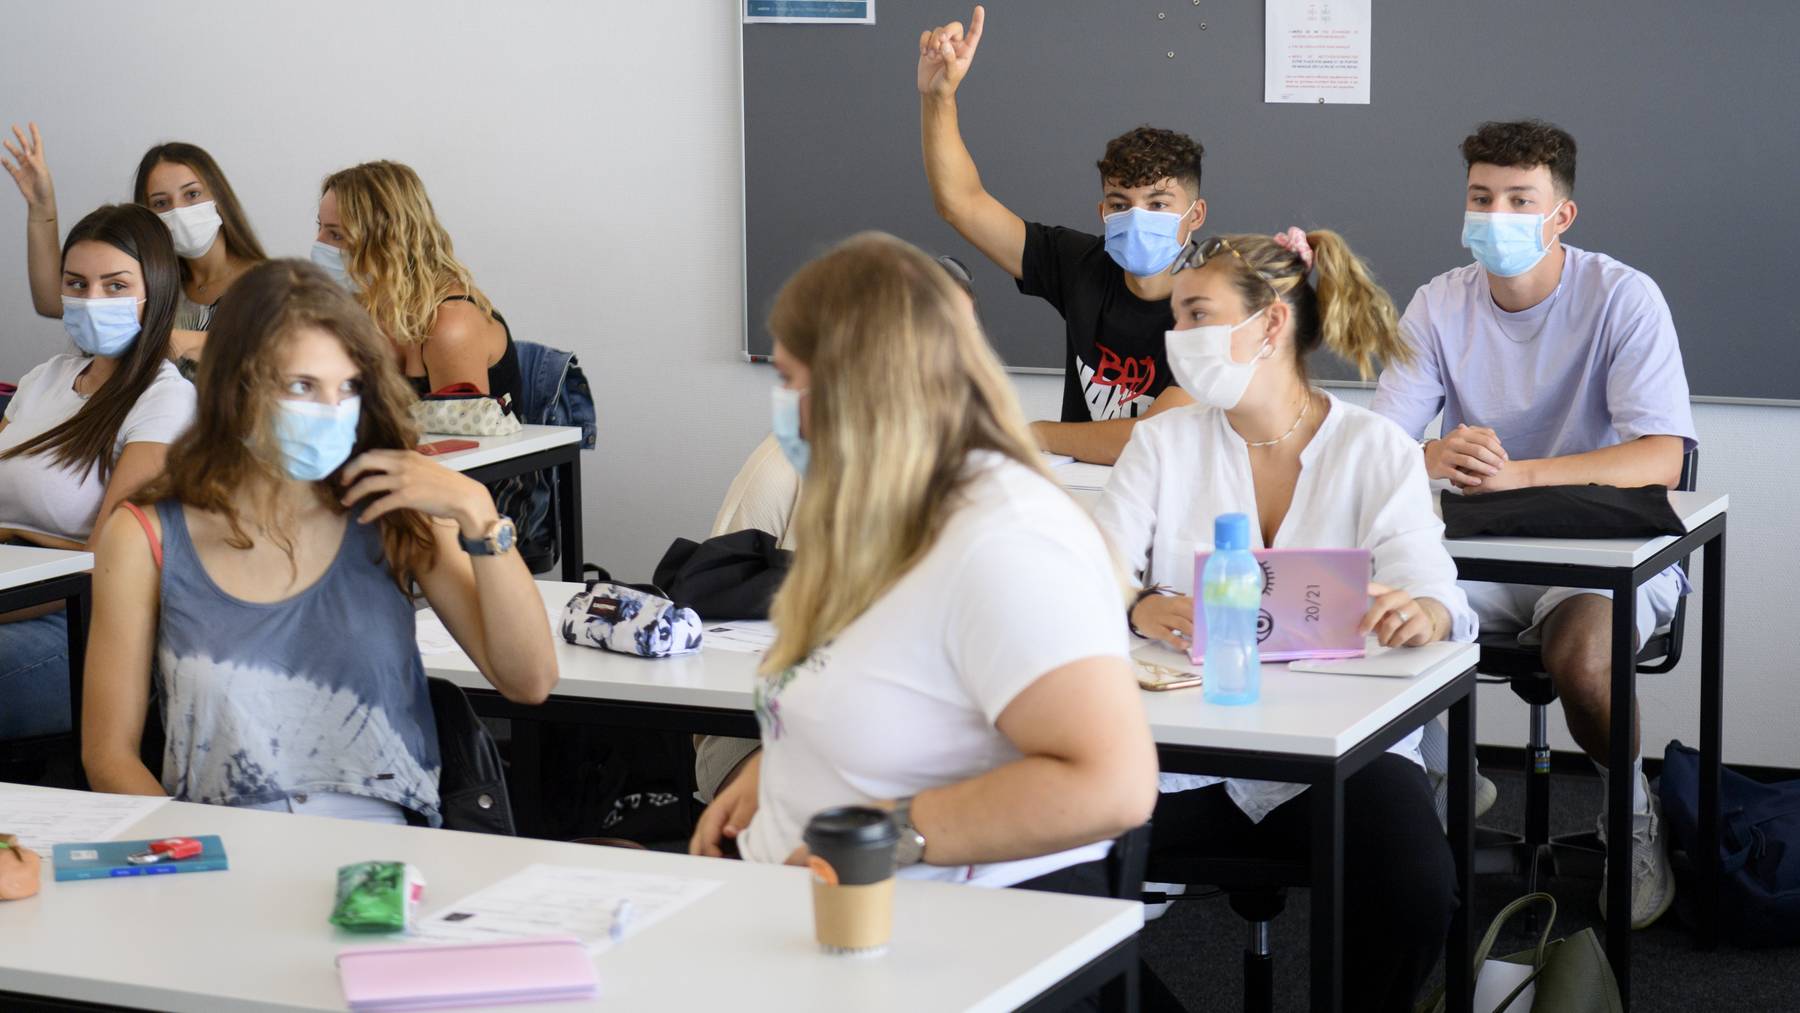 Auch in vielen Schulen gilt mittlerweile eine Maskenpflicht wegen dem Coronavirus.